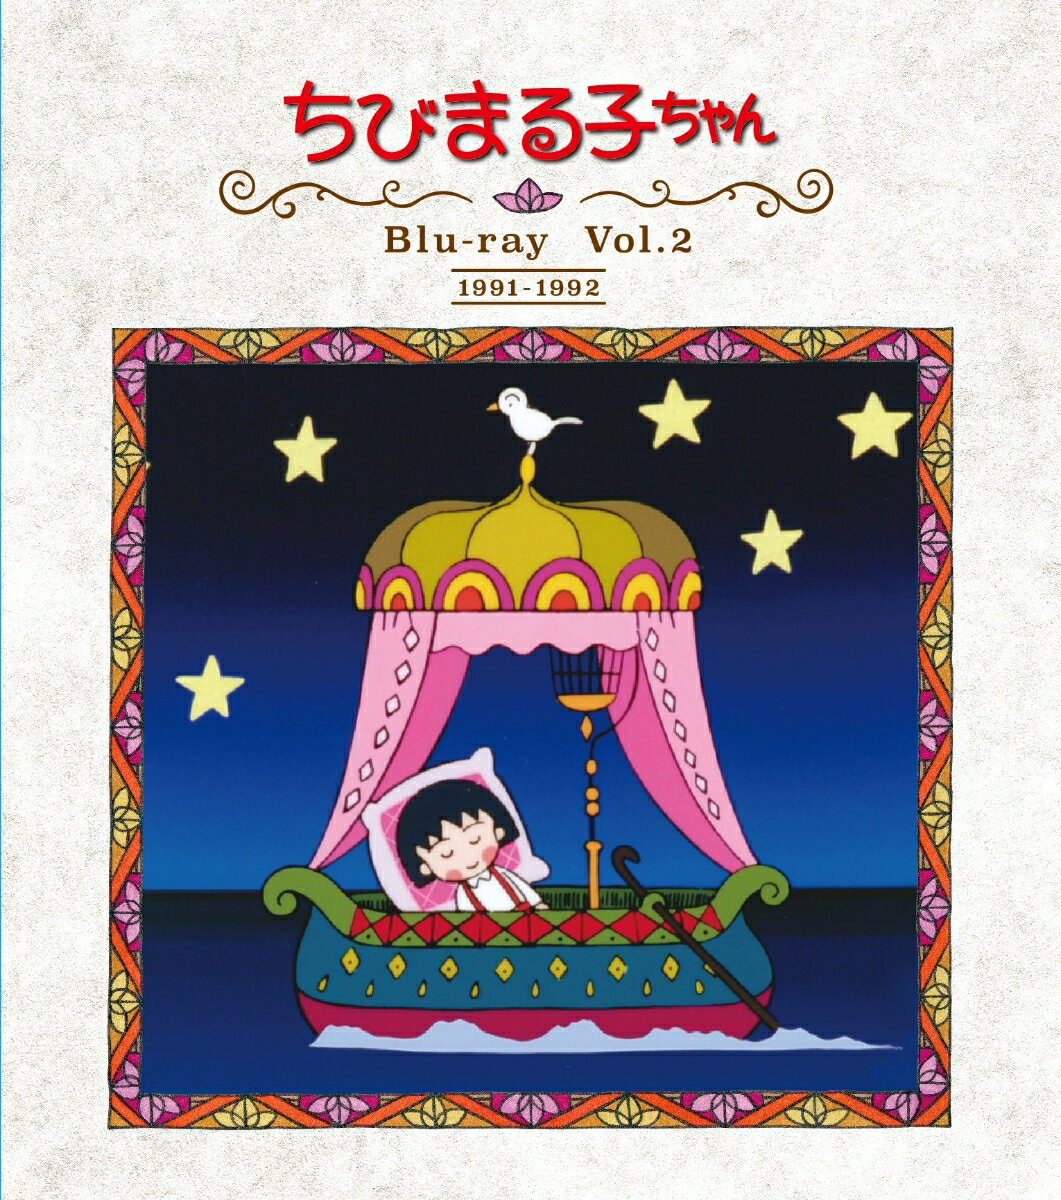 放送開始30周年記念 ちびまる子ちゃん 第1期 Blu-ray Vol.2 [ TARAKO ]